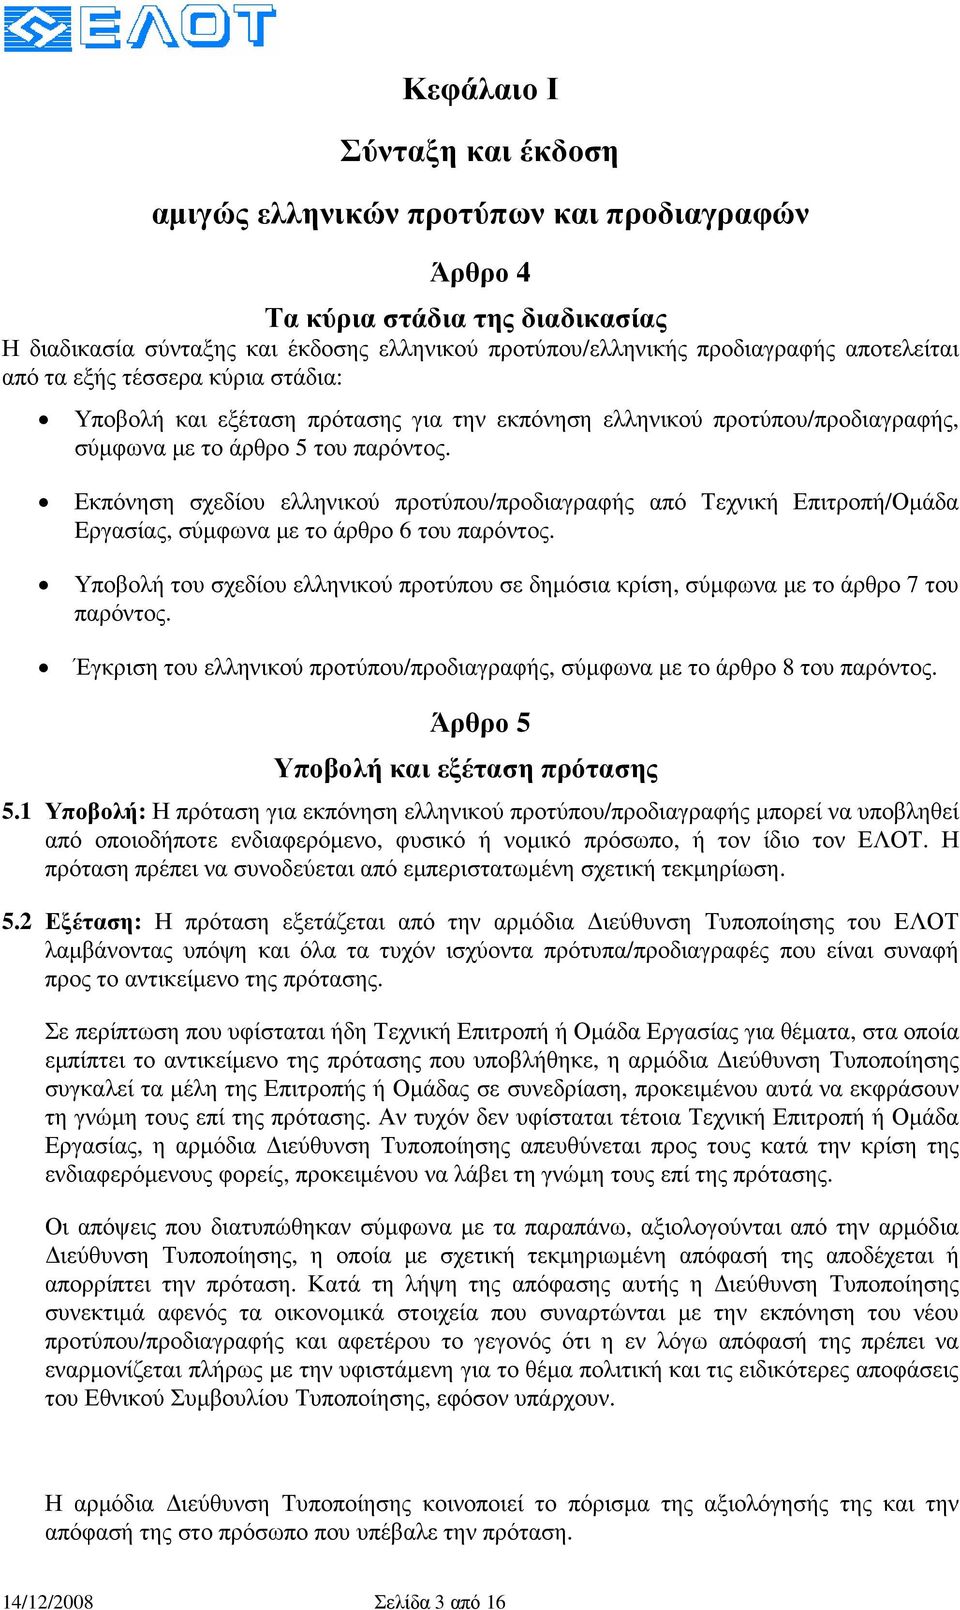 Εκπόνηση σχεδίου ελληνικού προτύπου/προδιαγραφής από Τεχνική Επιτροπή/Οµάδα Eργασίας, σύµφωνα µε το άρθρο 6 του παρόντος.